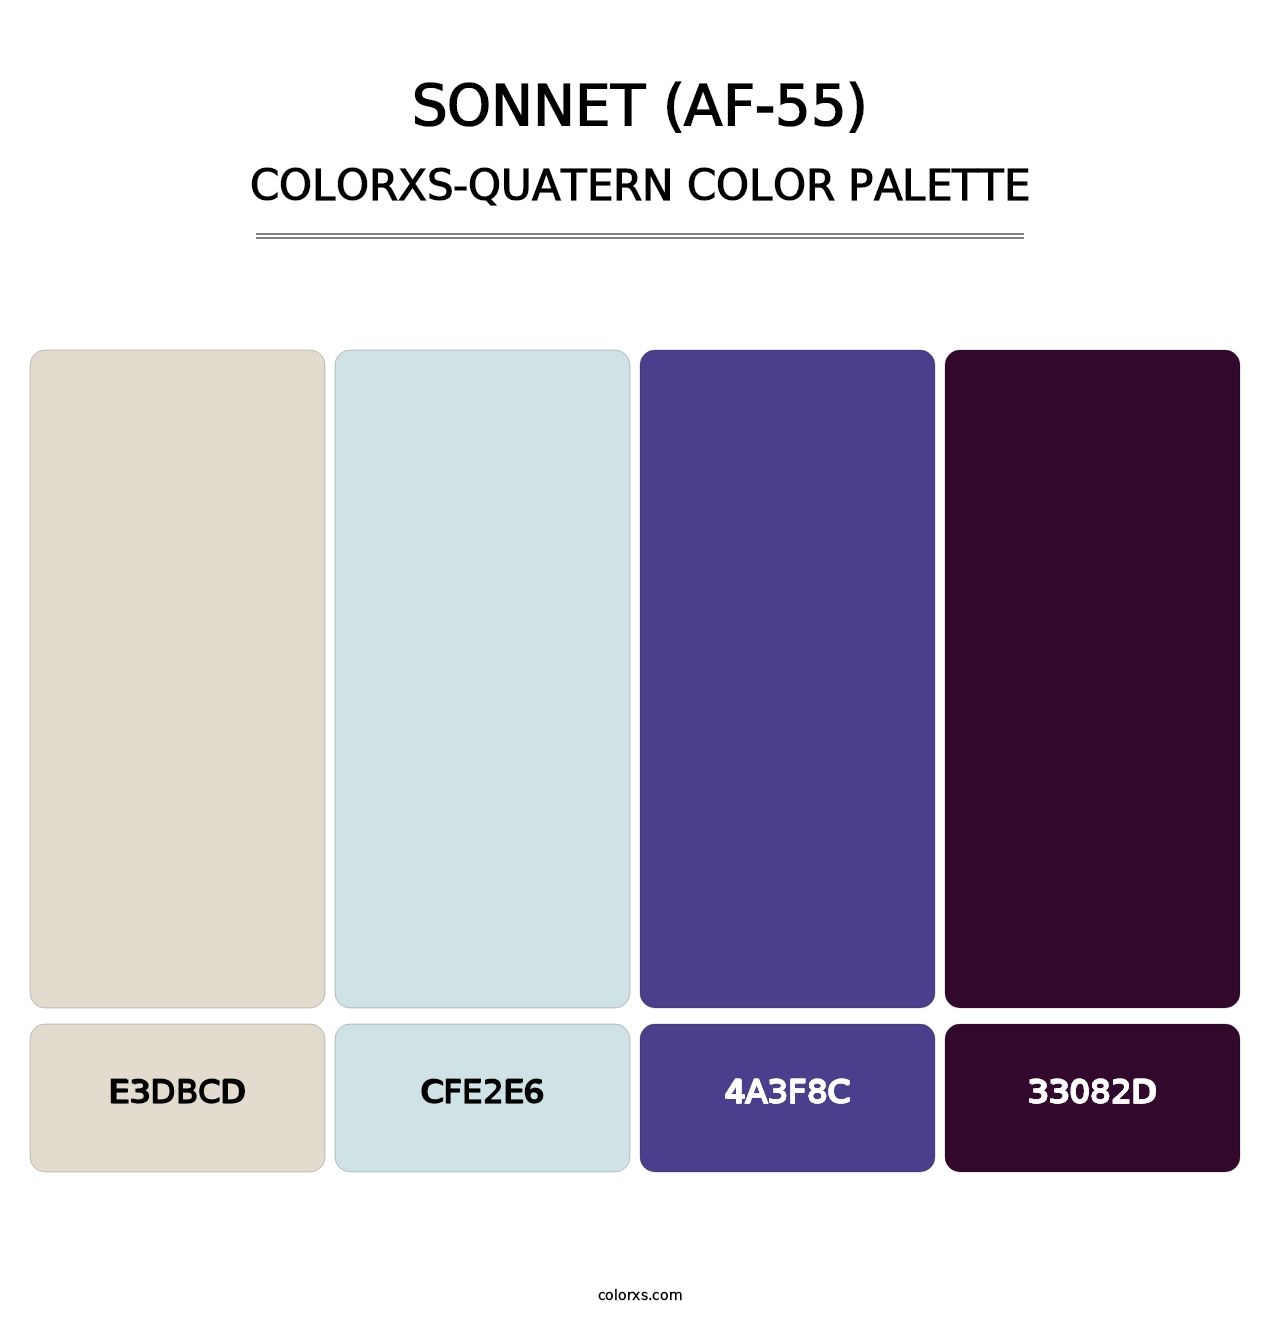 Sonnet (AF-55) - Colorxs Quatern Palette